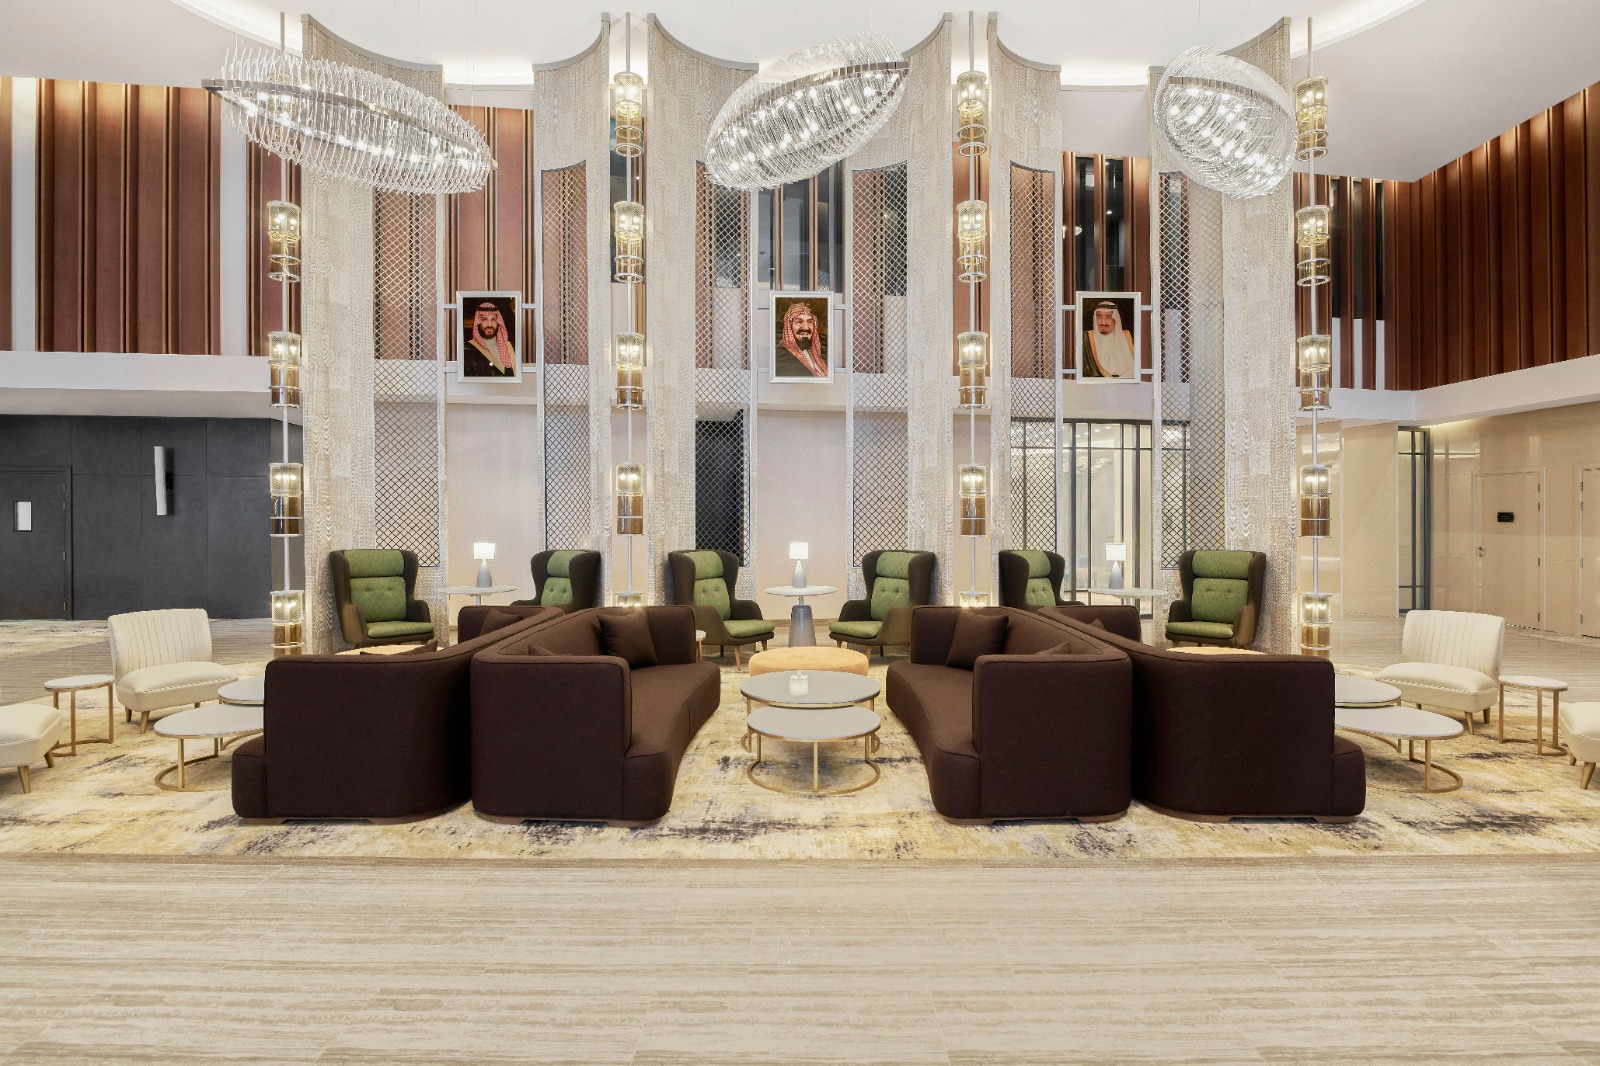 فنادق راديسون تعزز وجودها في السعودية وتفتتح فندق راديسون بلو، مركز الرياض الدولي للمعارض والمؤتمرات